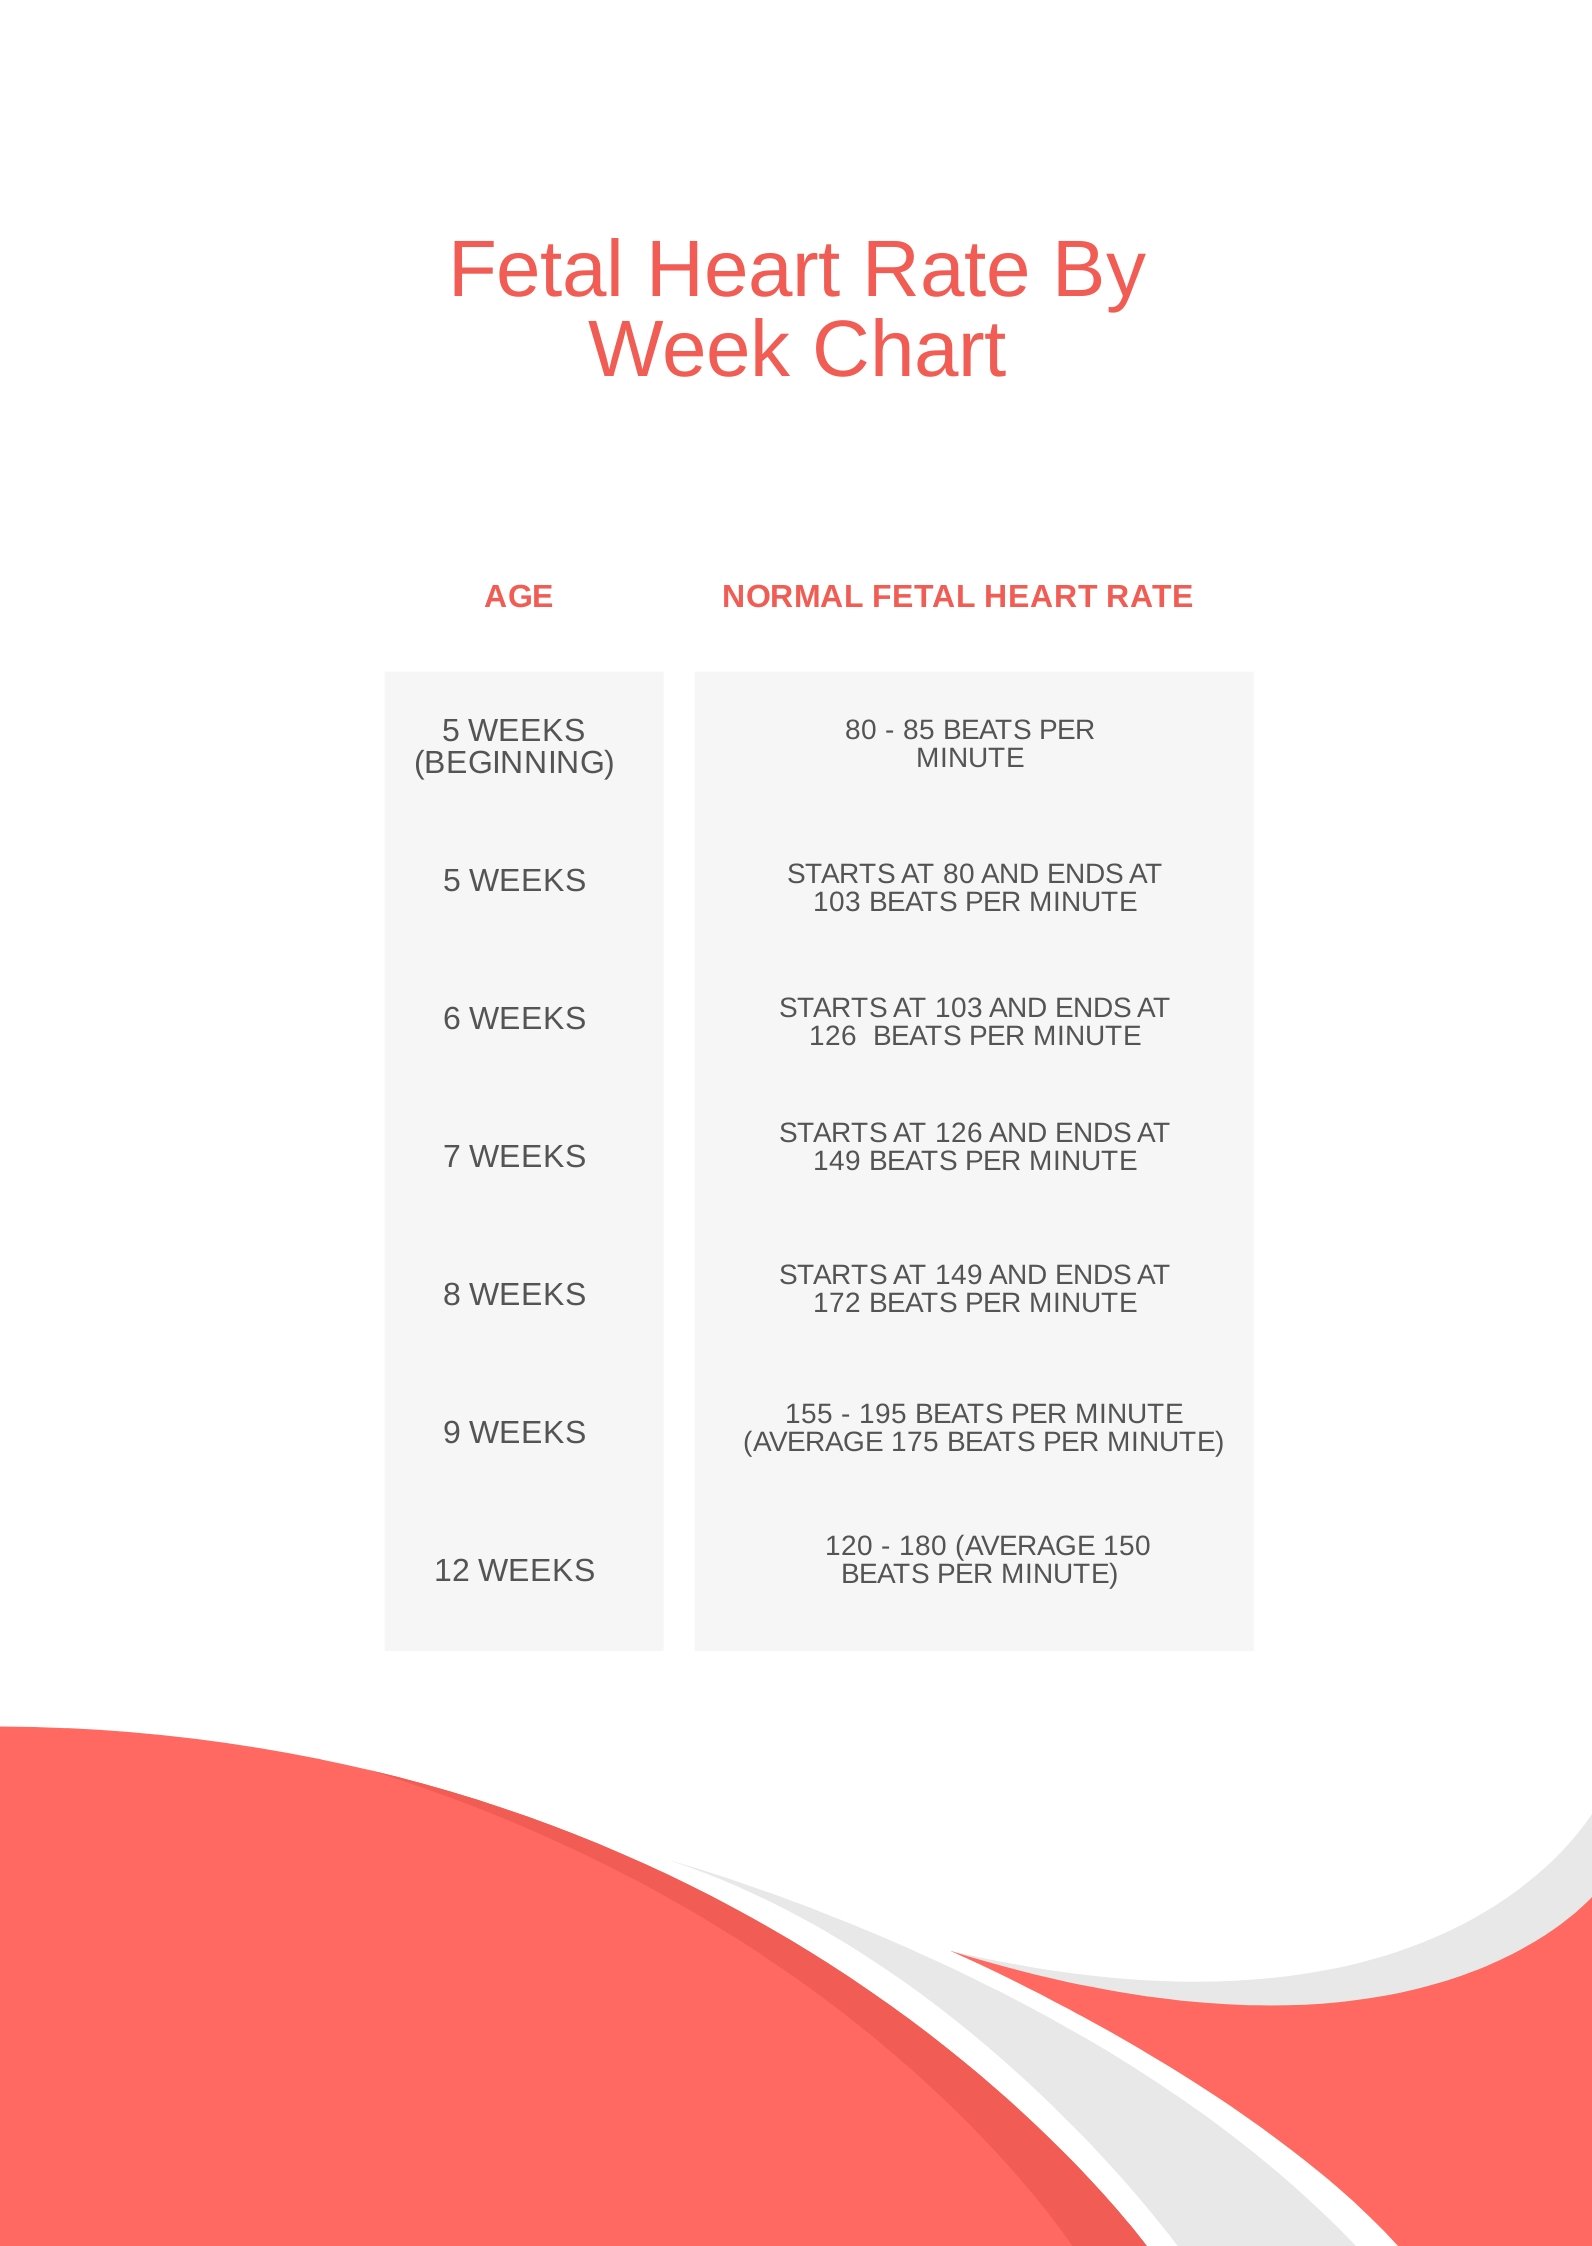 Fetal Heart Rate By Week Chart in PDF